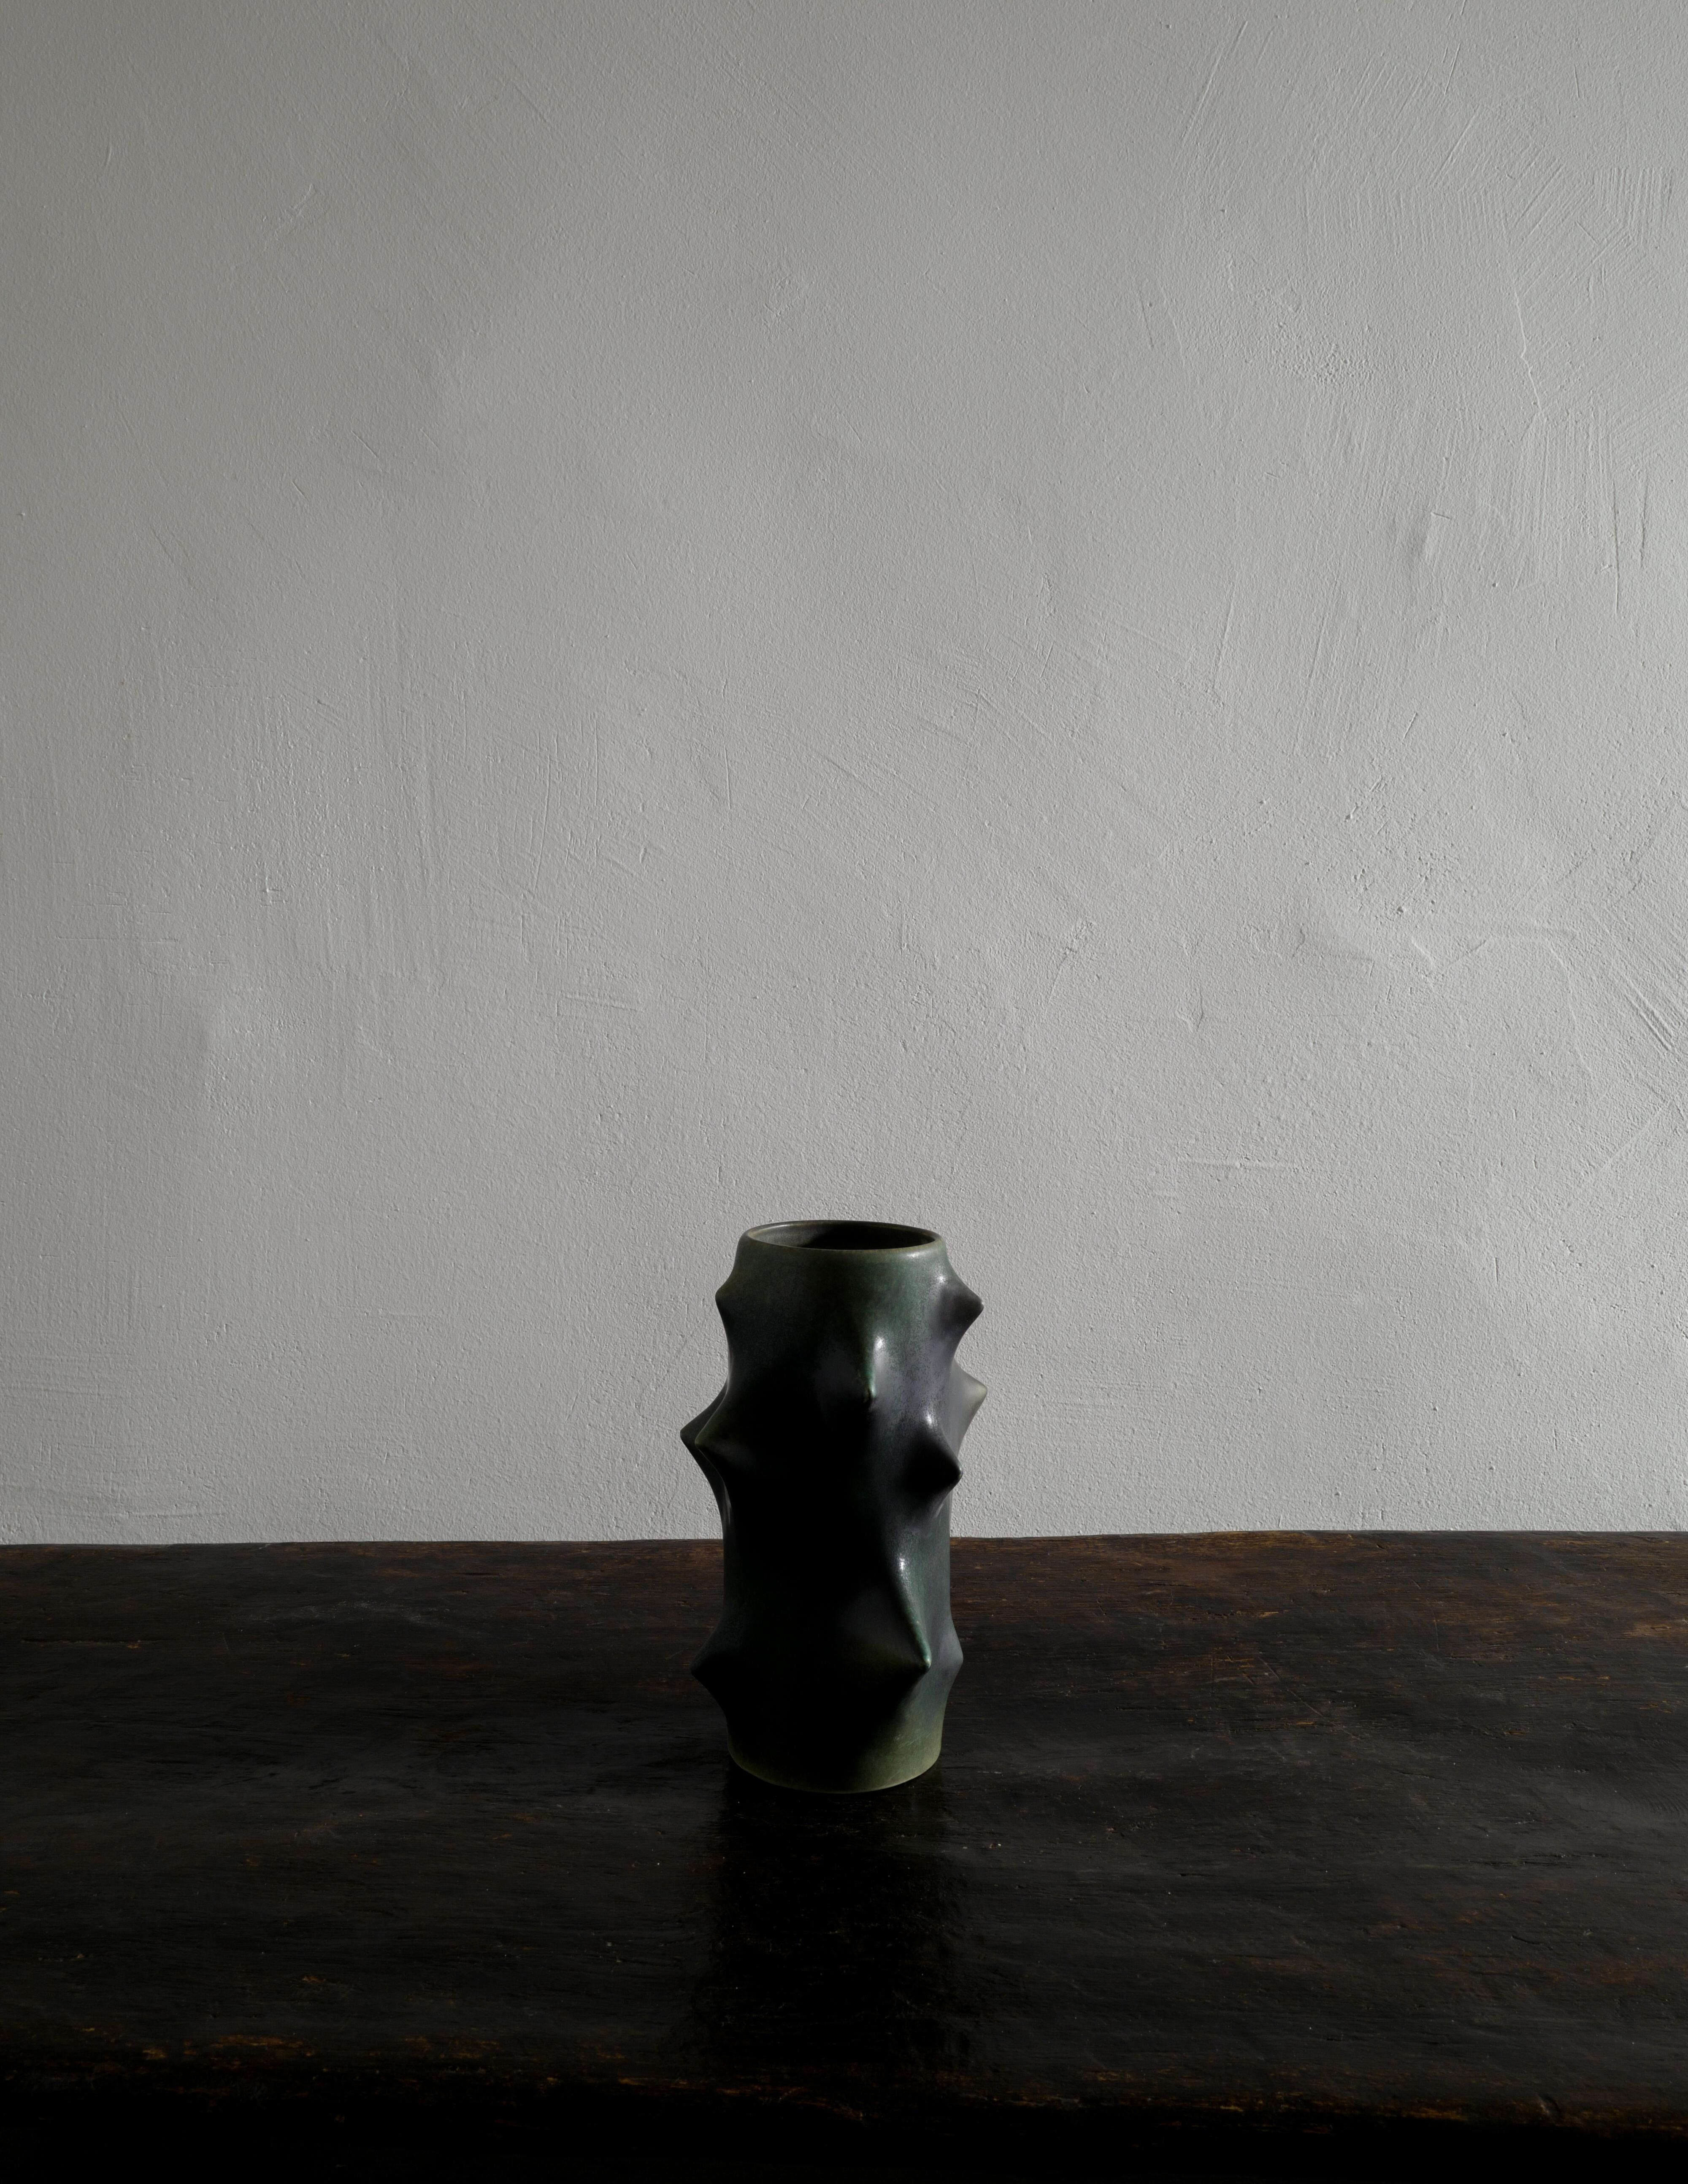 Seltene dunkelgrüne Dornenvase, entworfen von Knud Basse und hergestellt von Michael Andersen, Dänemark. In gutem Vintage-Zustand mit kleinen Gebrauchsspuren und signiert / markiert an der Unterseite. Wir haben weitere Vasen in diesem Stil von Knud